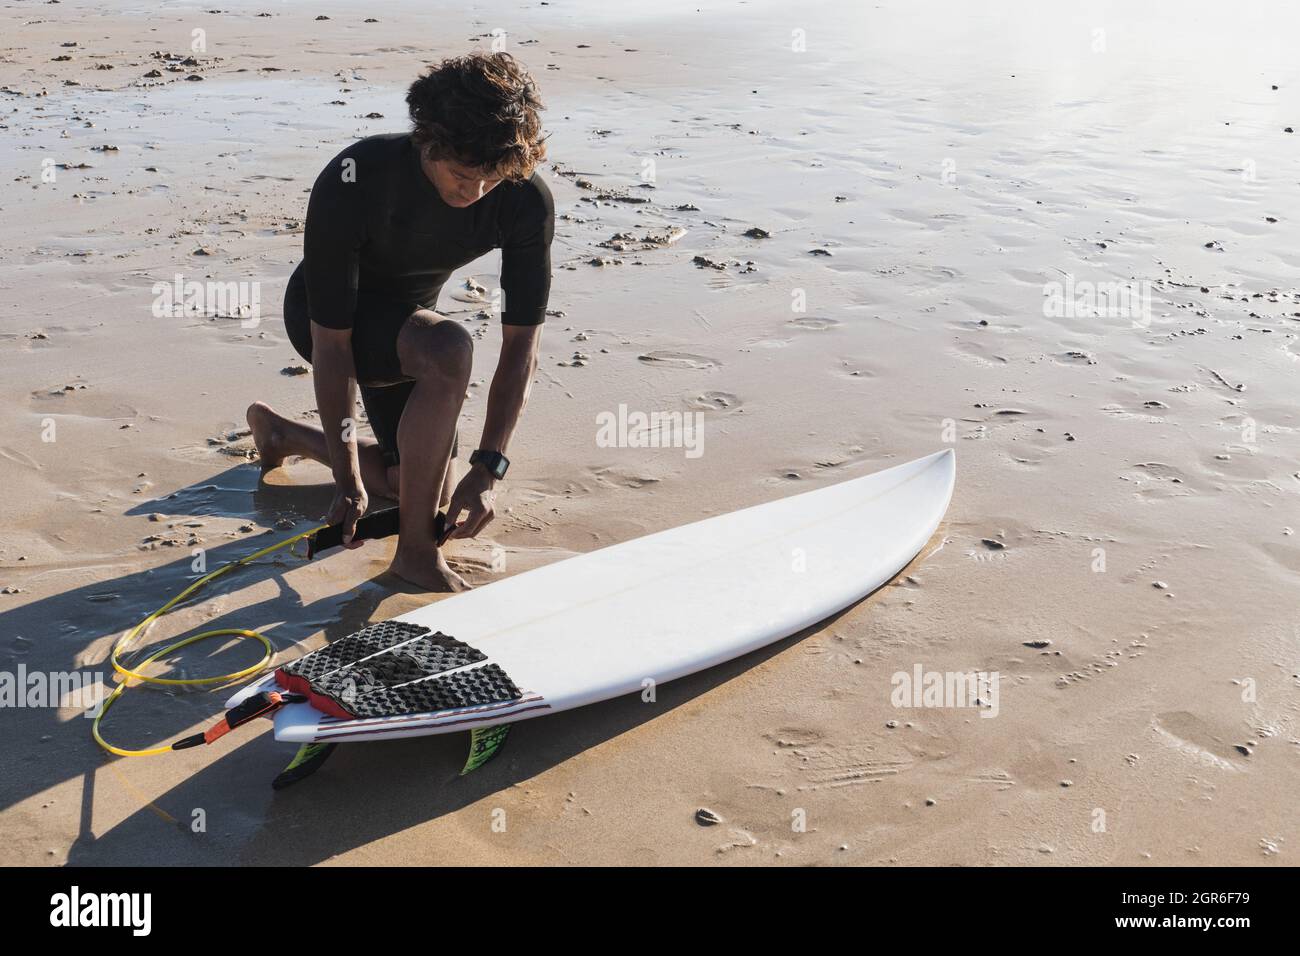 Junger Surfer, der Surfleine an seinem Knöchel befestigt Stockfoto